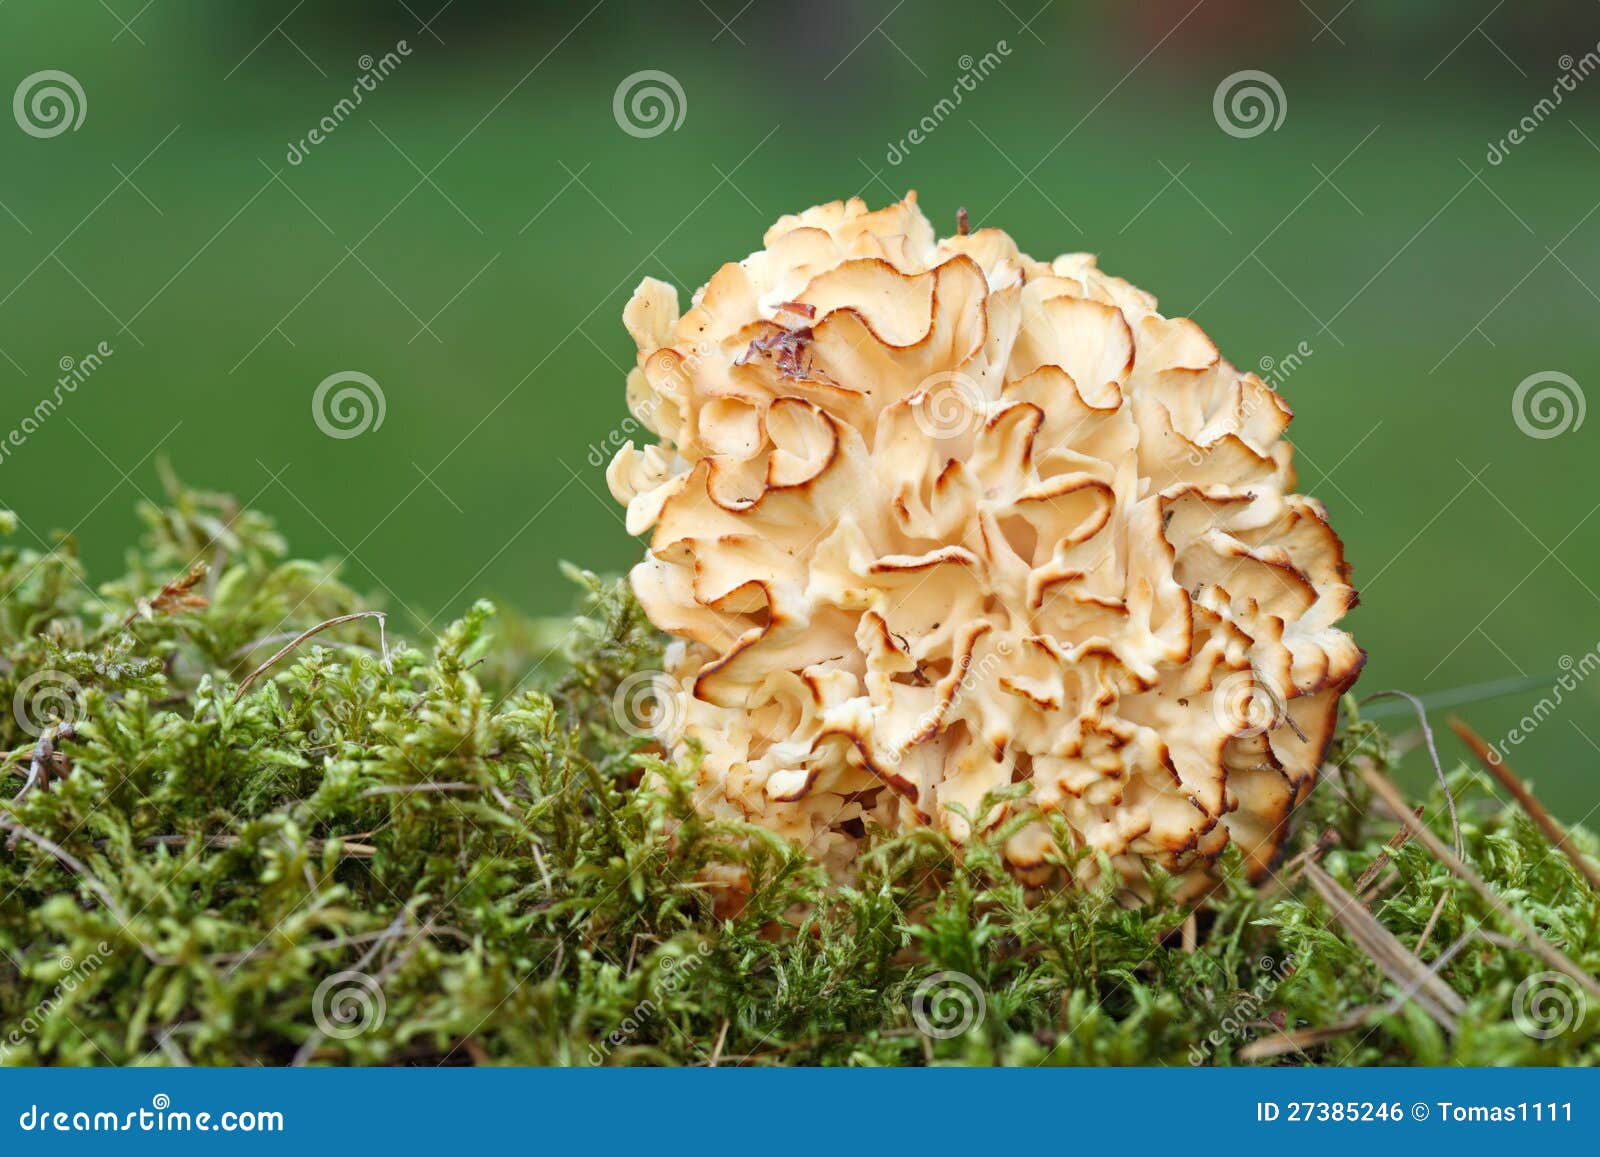 гриб баран фото описание